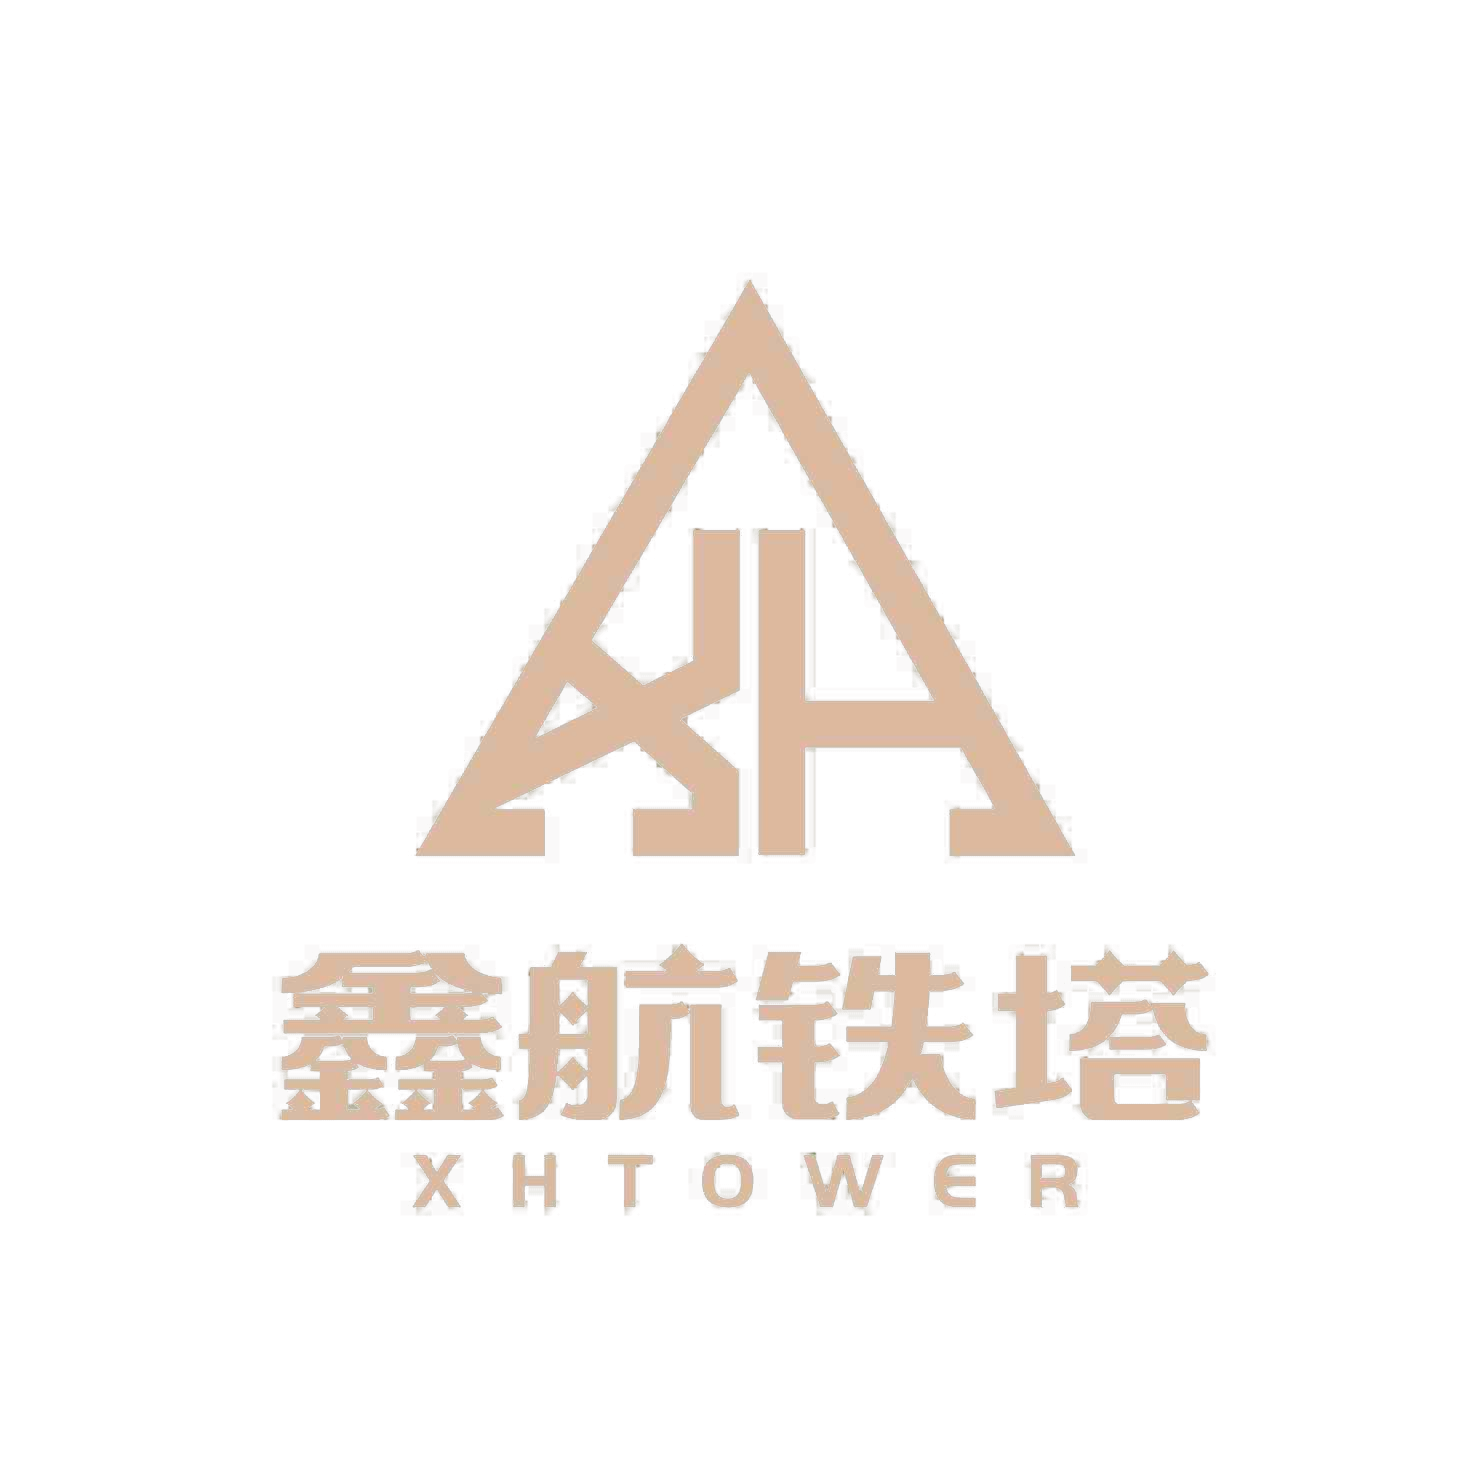 Xinhang Tower Technology Co., Ltd.